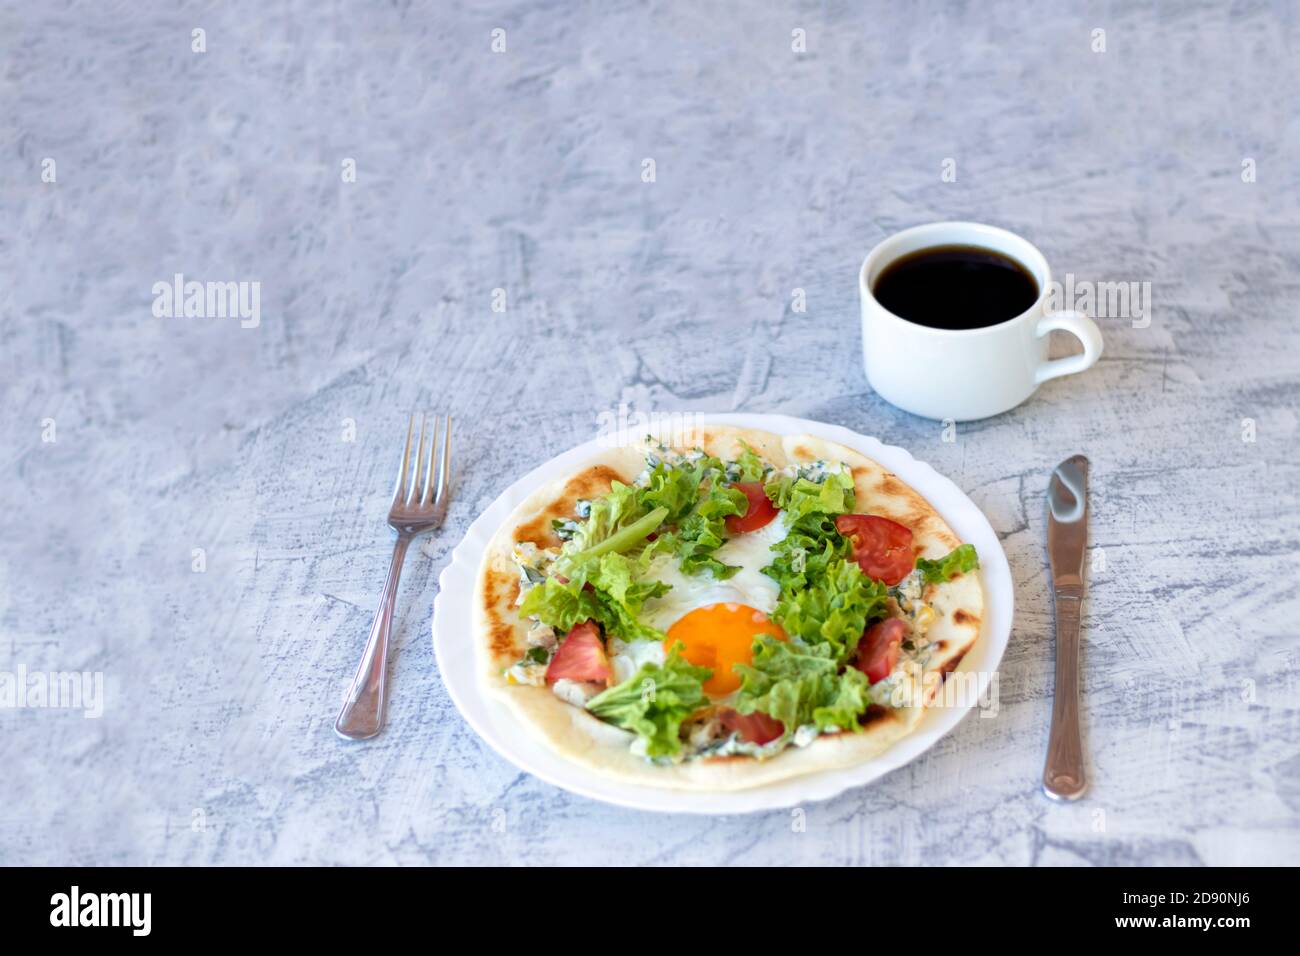 Colazione italiana con caffè. Piadina con uova, pomodori e insalata. Deliziosa colazione servita su tavolo testurizzato. Messa a fuoco morbida Foto Stock